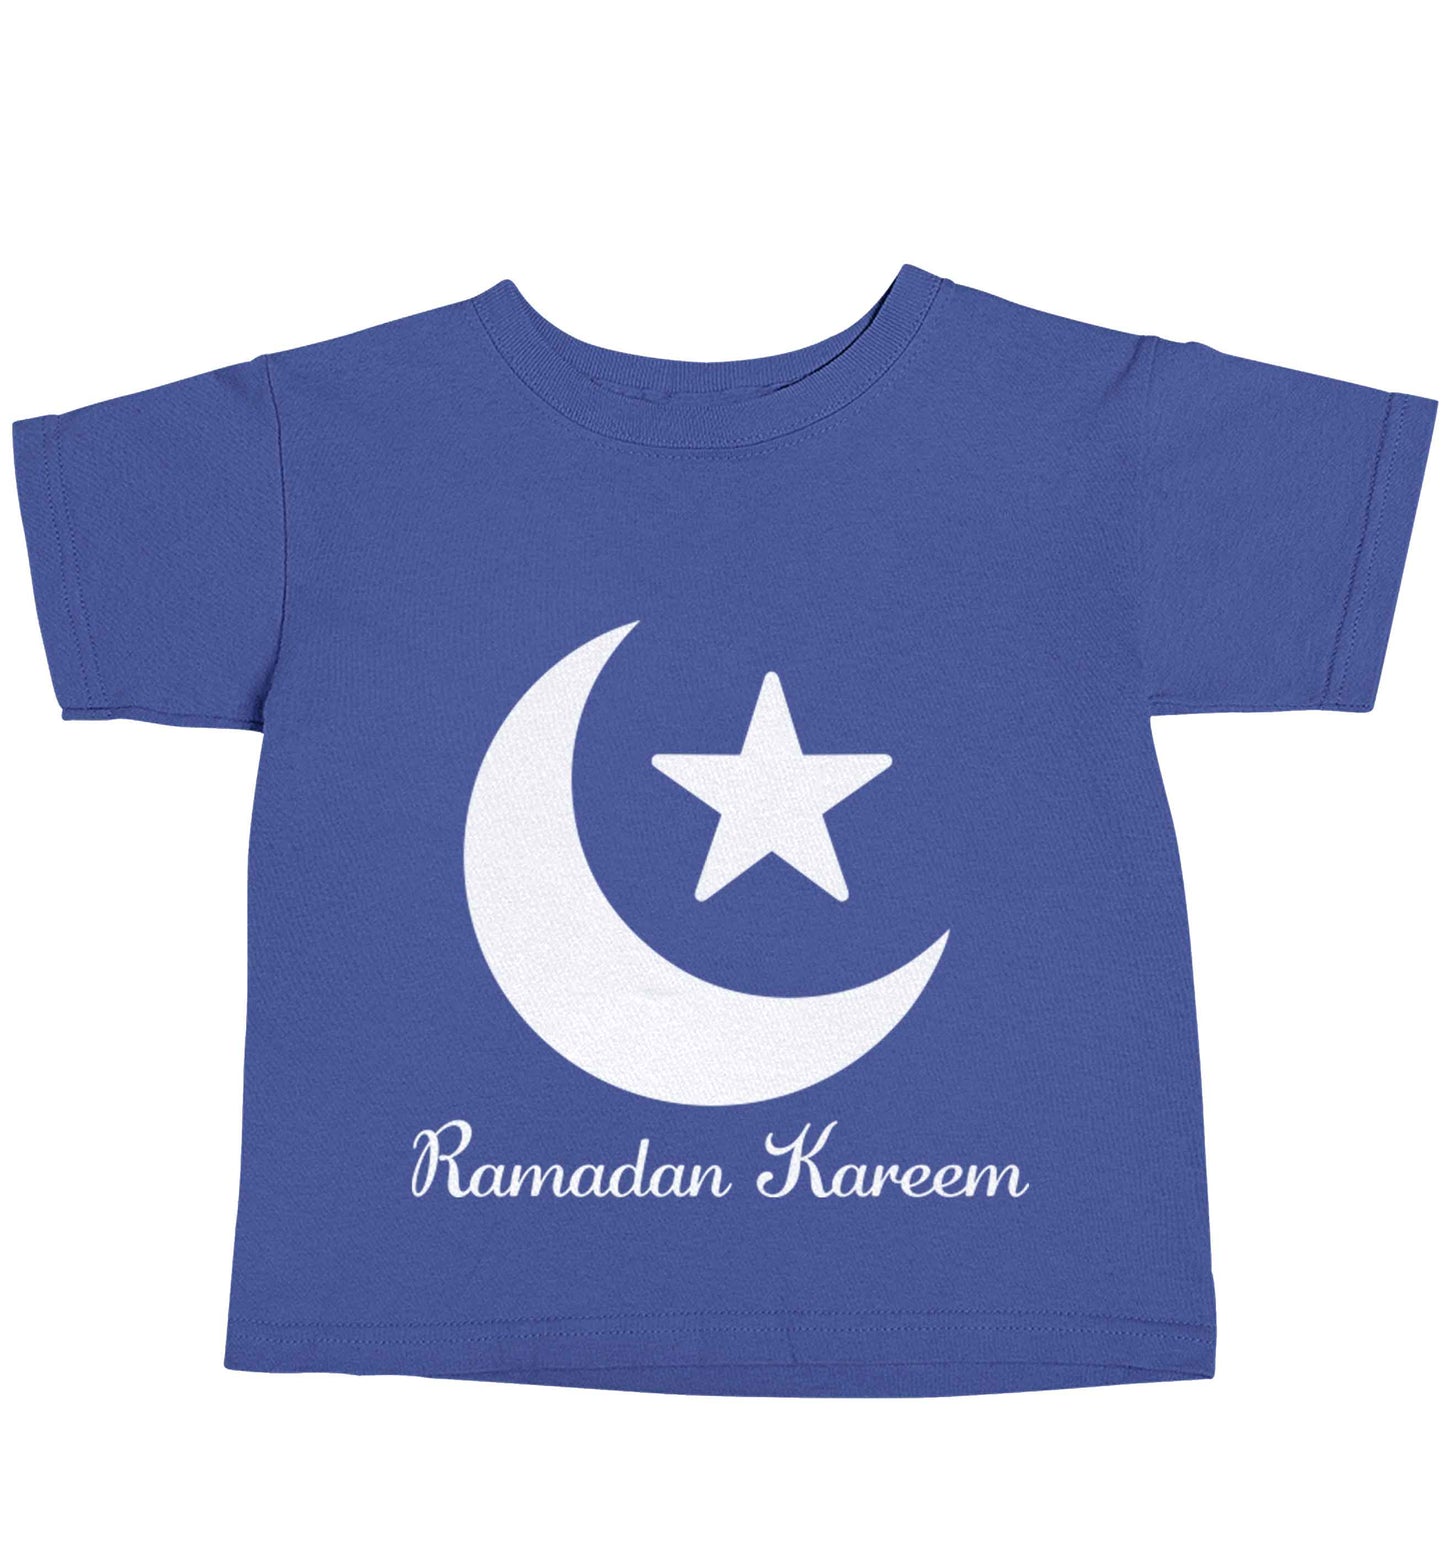 Ramadan kareem blue baby toddler Tshirt 2 Years